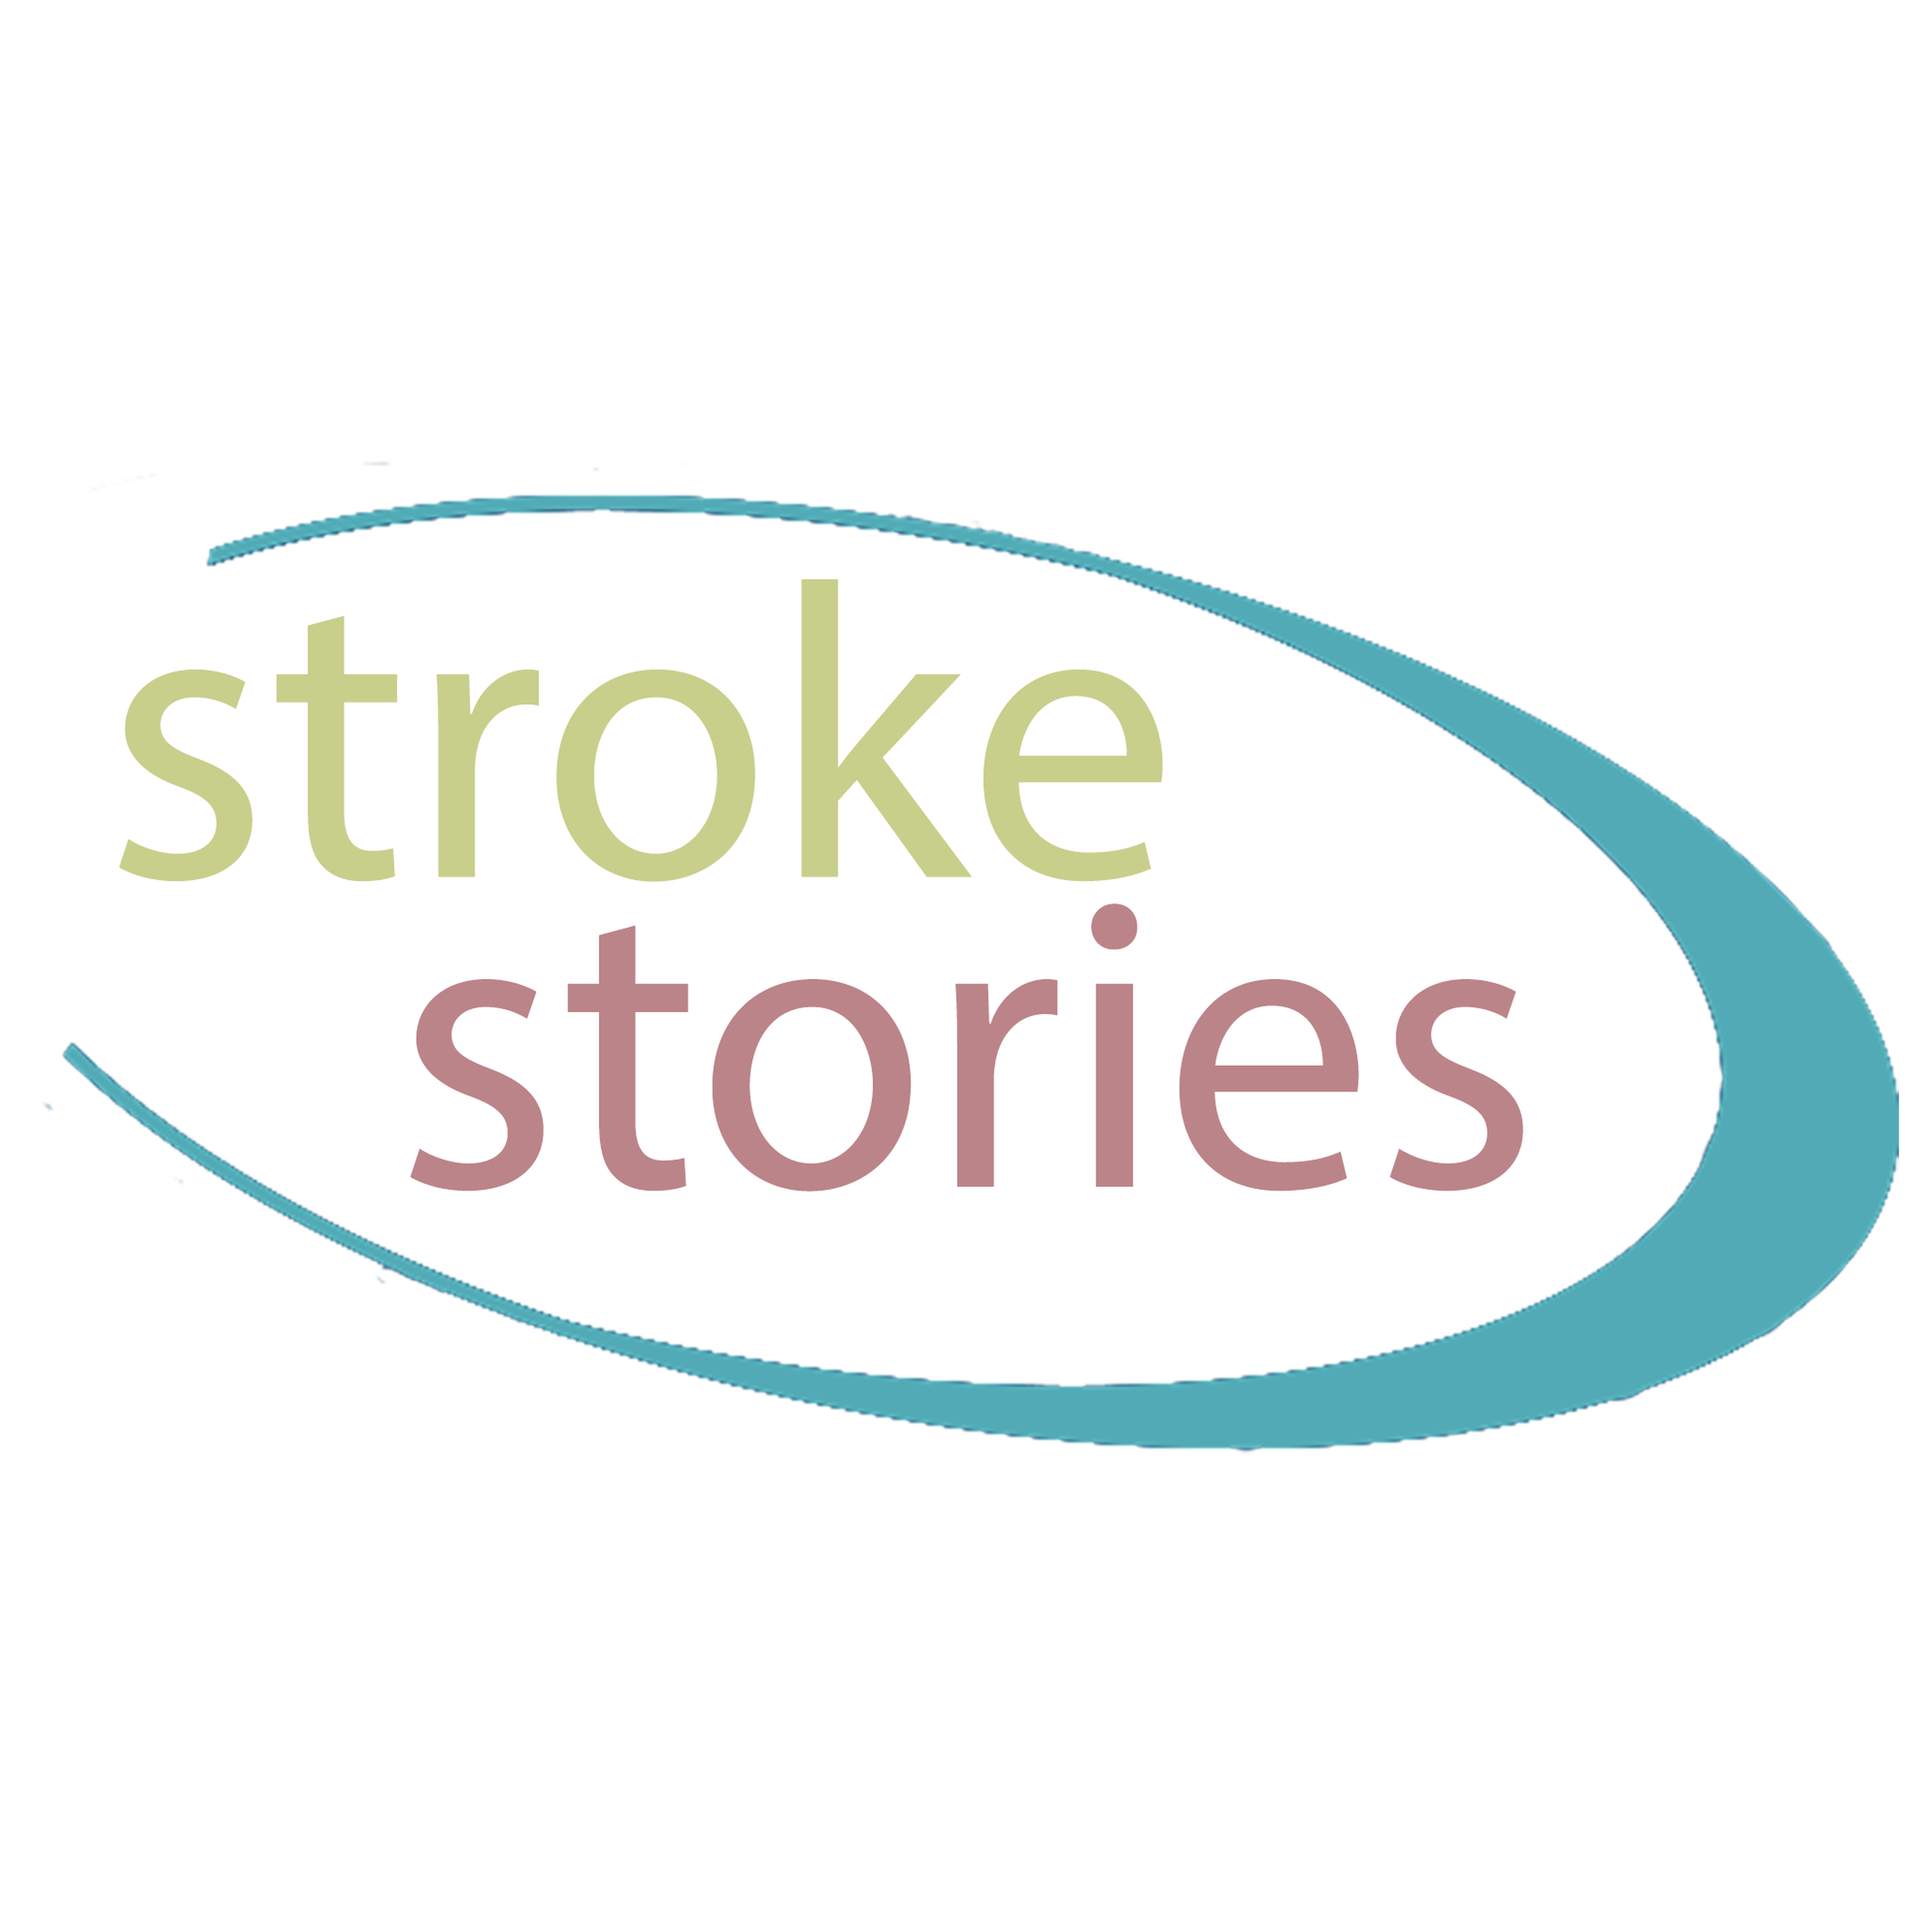 Stroke Stories Season 2 Episode 24 - Aaron Milner